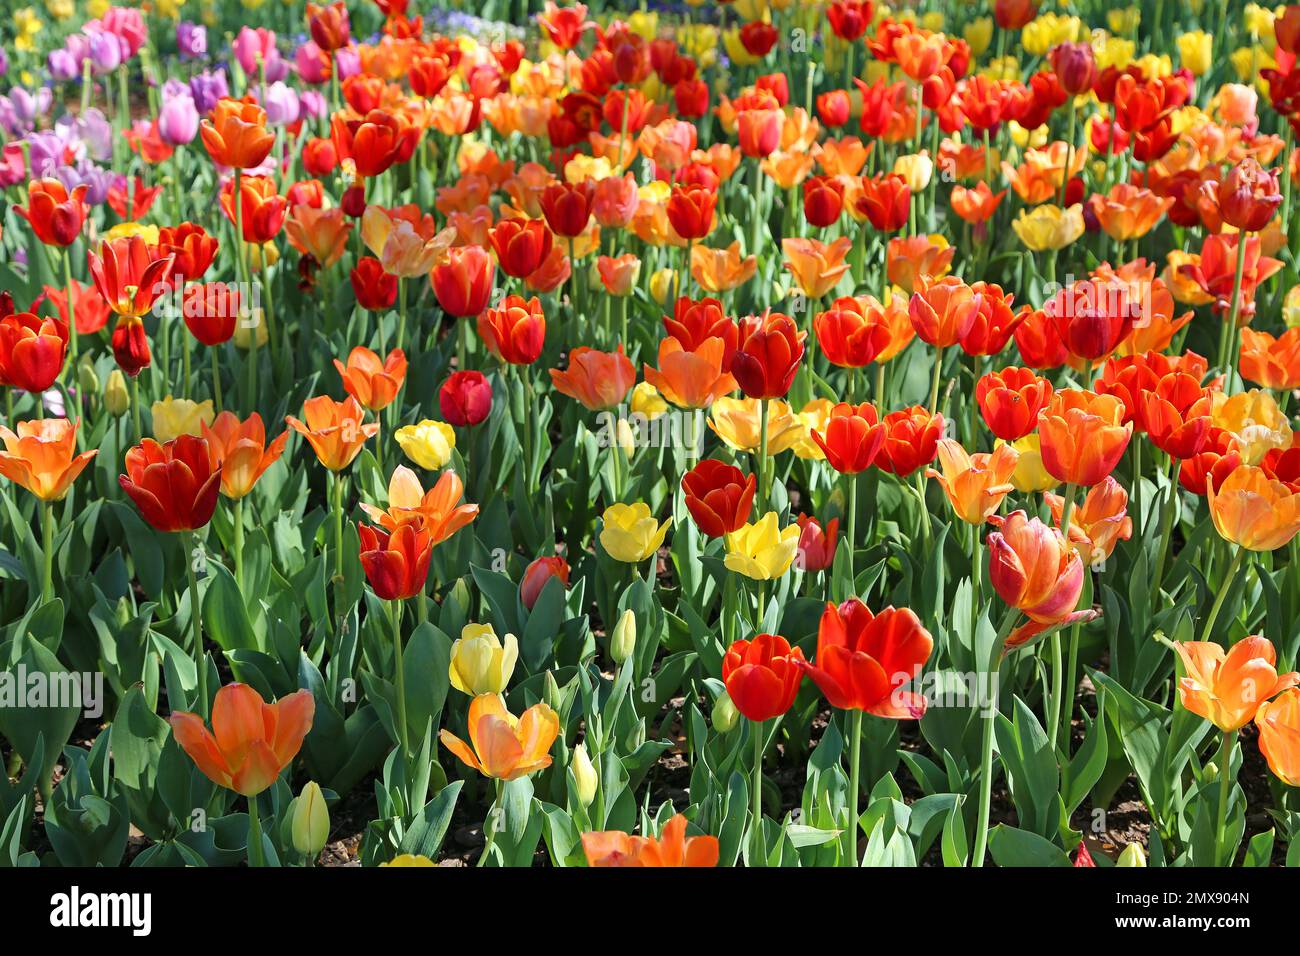 Red, orange and yellow tulips - Fort Worth Botanic Garden, Texas Stock Photo